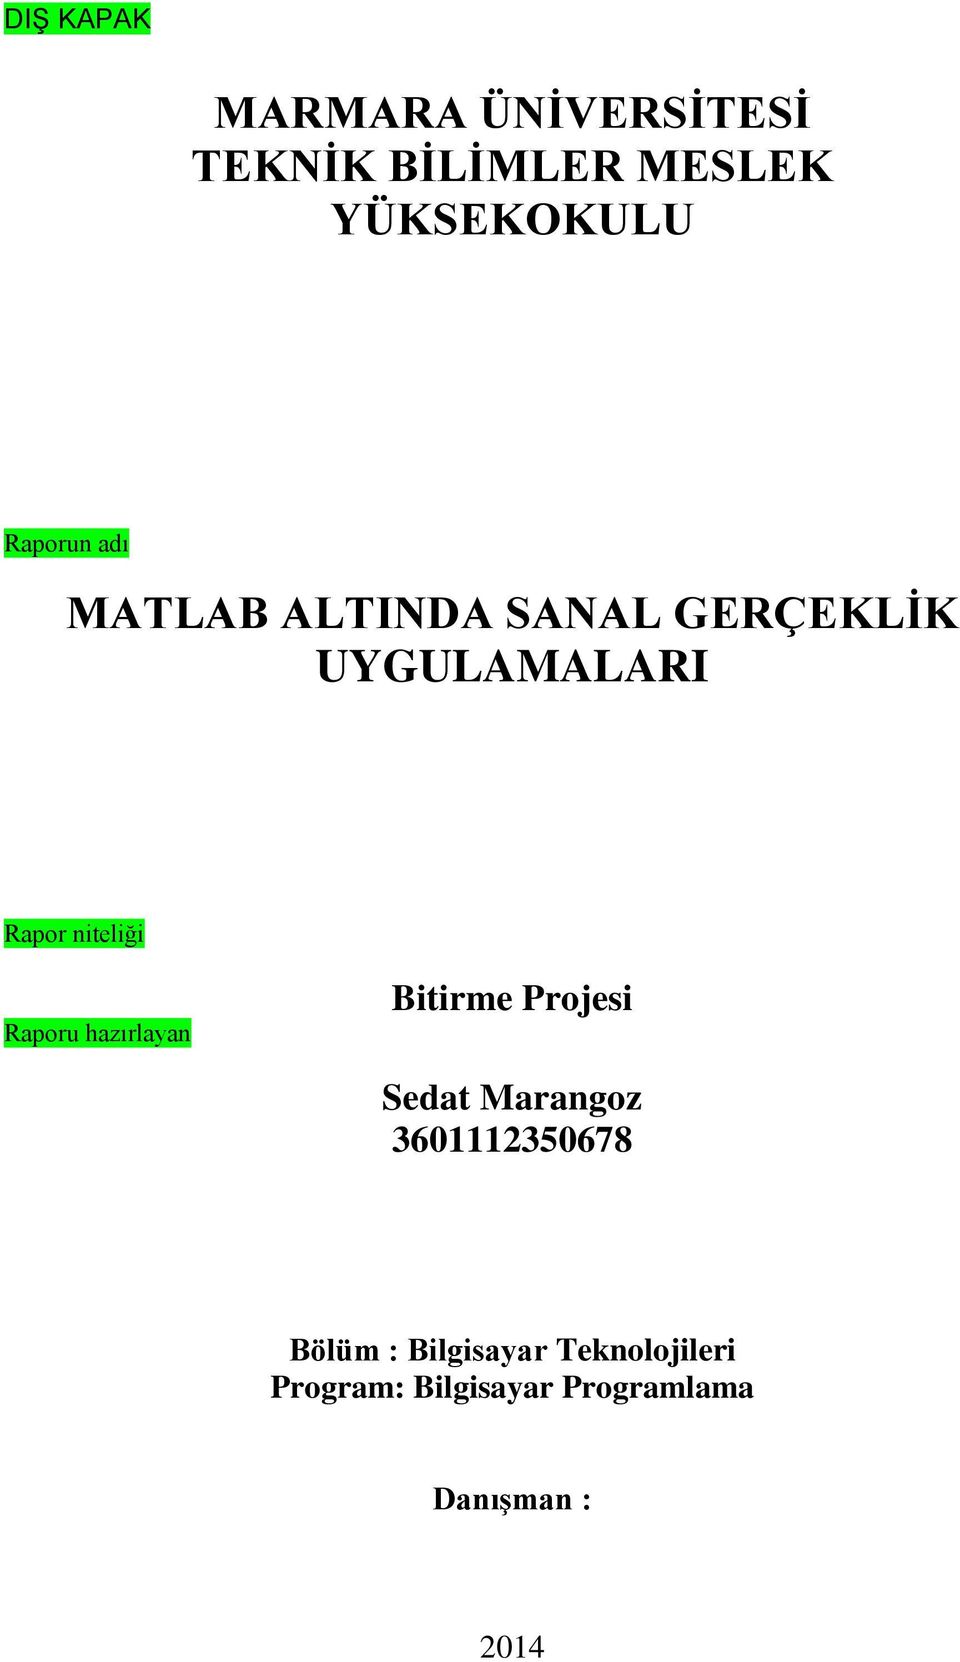 niteliği Raporu hazırlayan Bitirme Projesi Sedat Marangoz